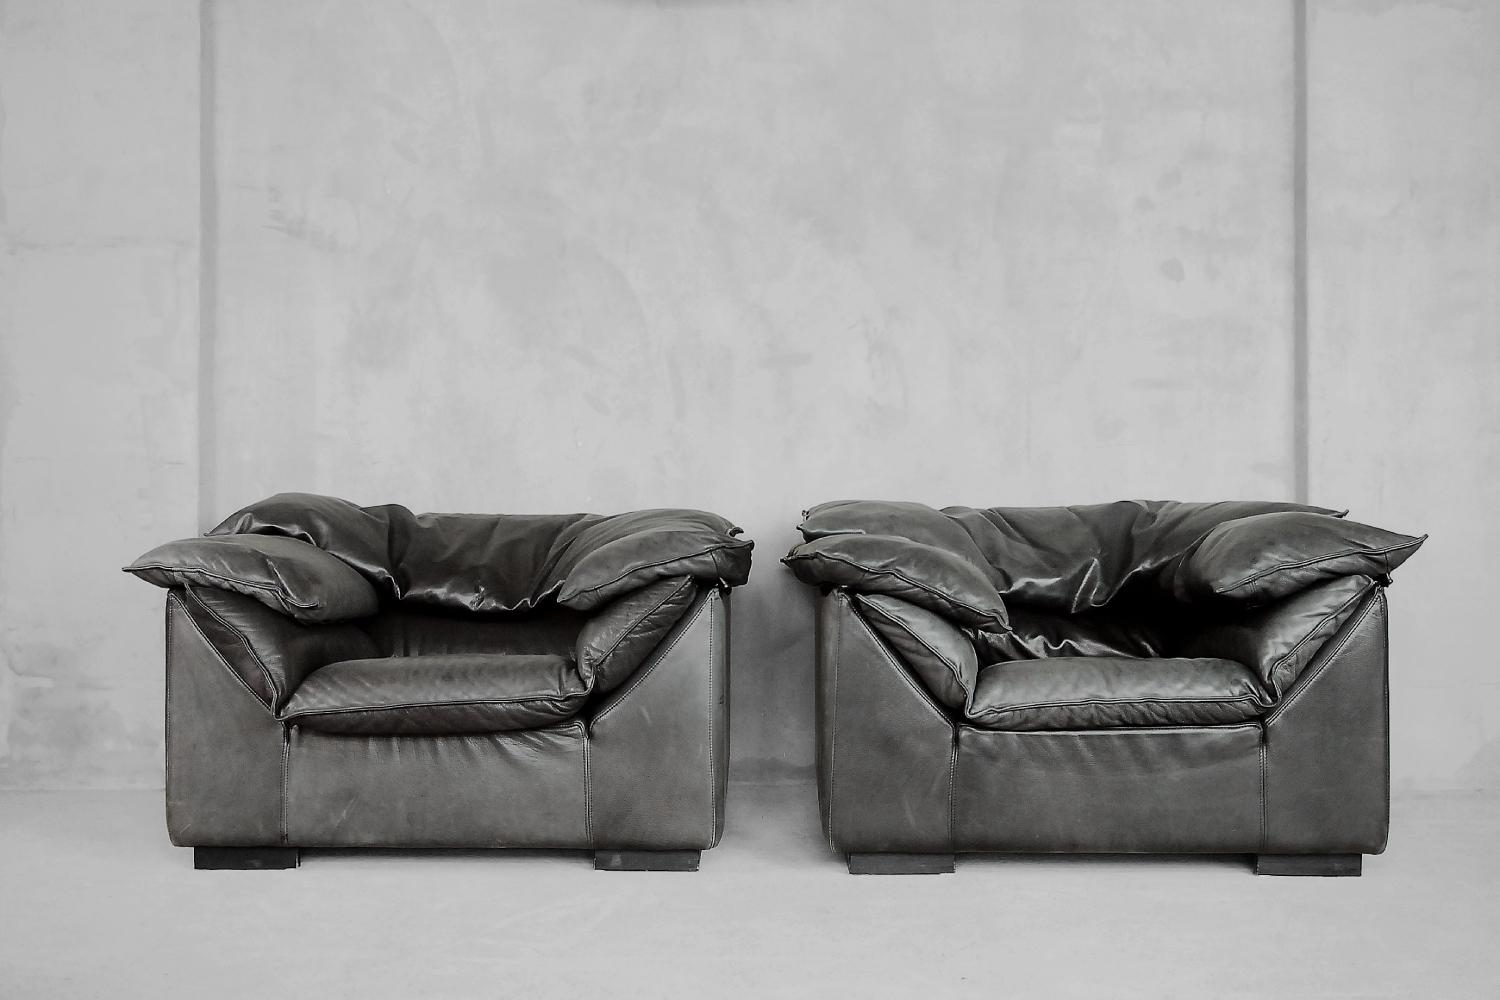 Diese großen Sessel wurden von Jens Juul Eilersen entworfen und in den 1970er Jahren von Niels Eilersen, einem sehr angesehenen dänischen Möbelhersteller, hergestellt. Es handelt sich um das Modell Monza mit daunengepolsterten Kissen mit